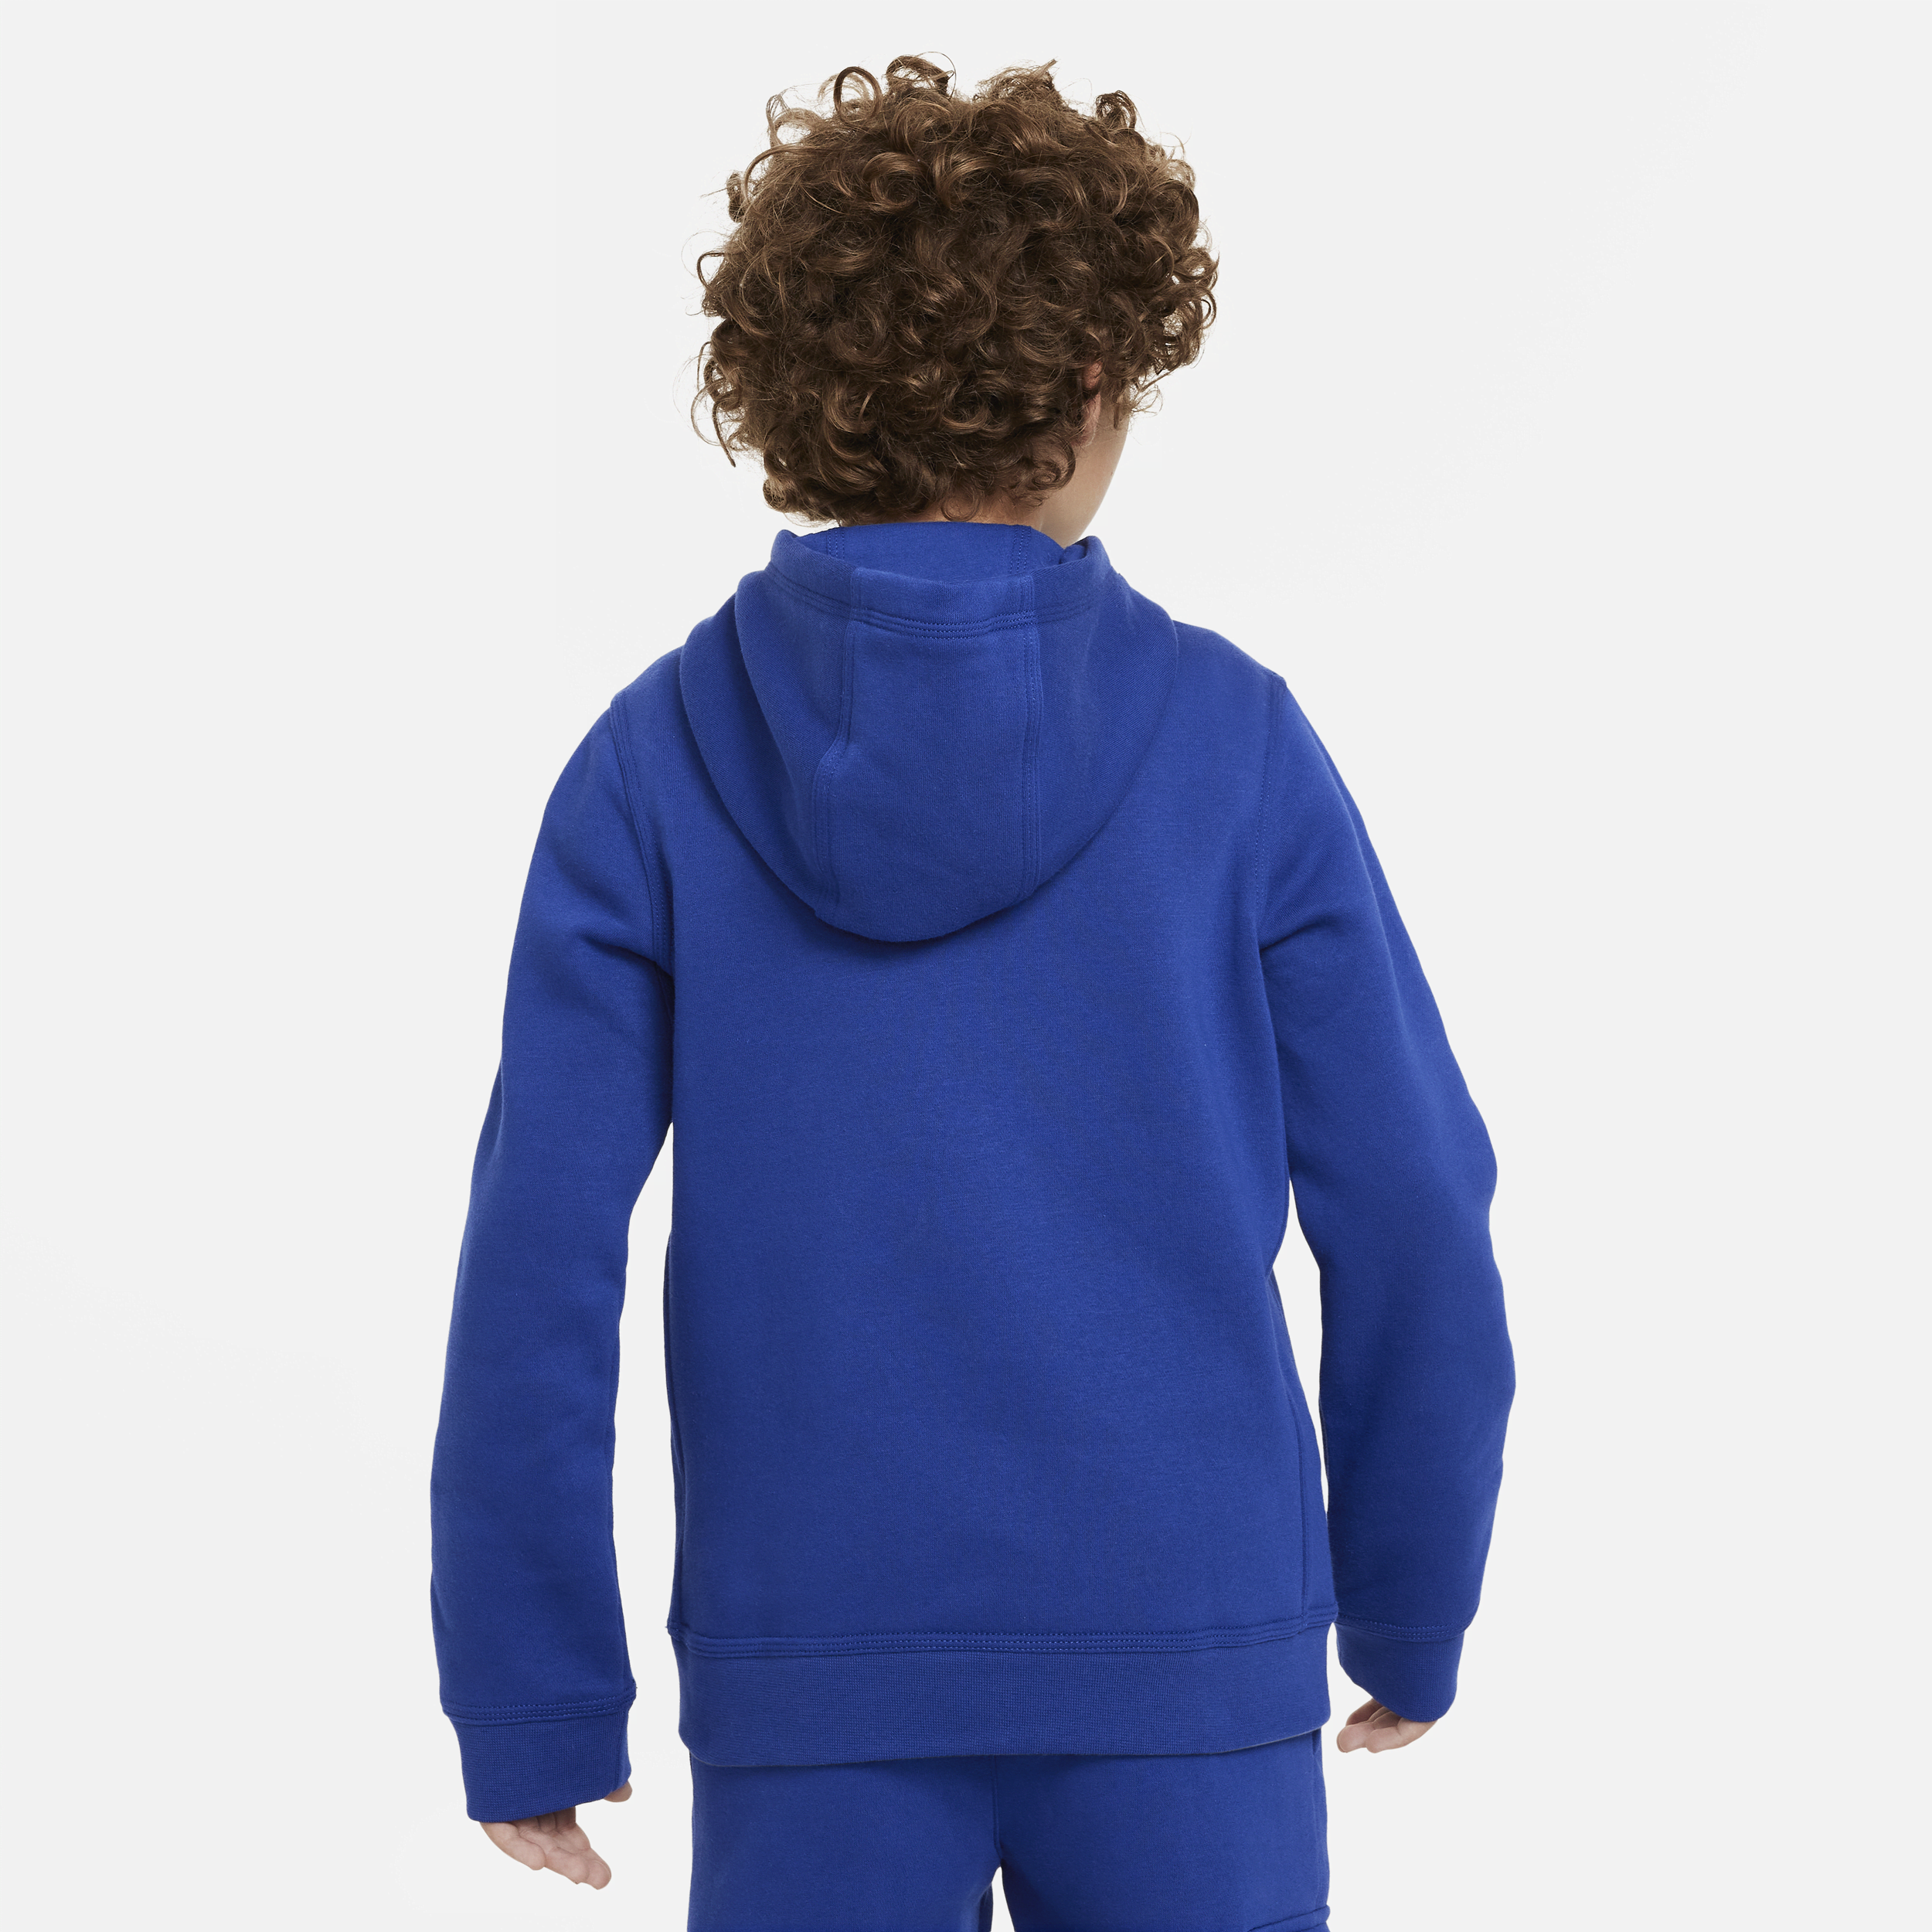 Nike Sportswear fleecehoodie met graphic voor jongens Blauw